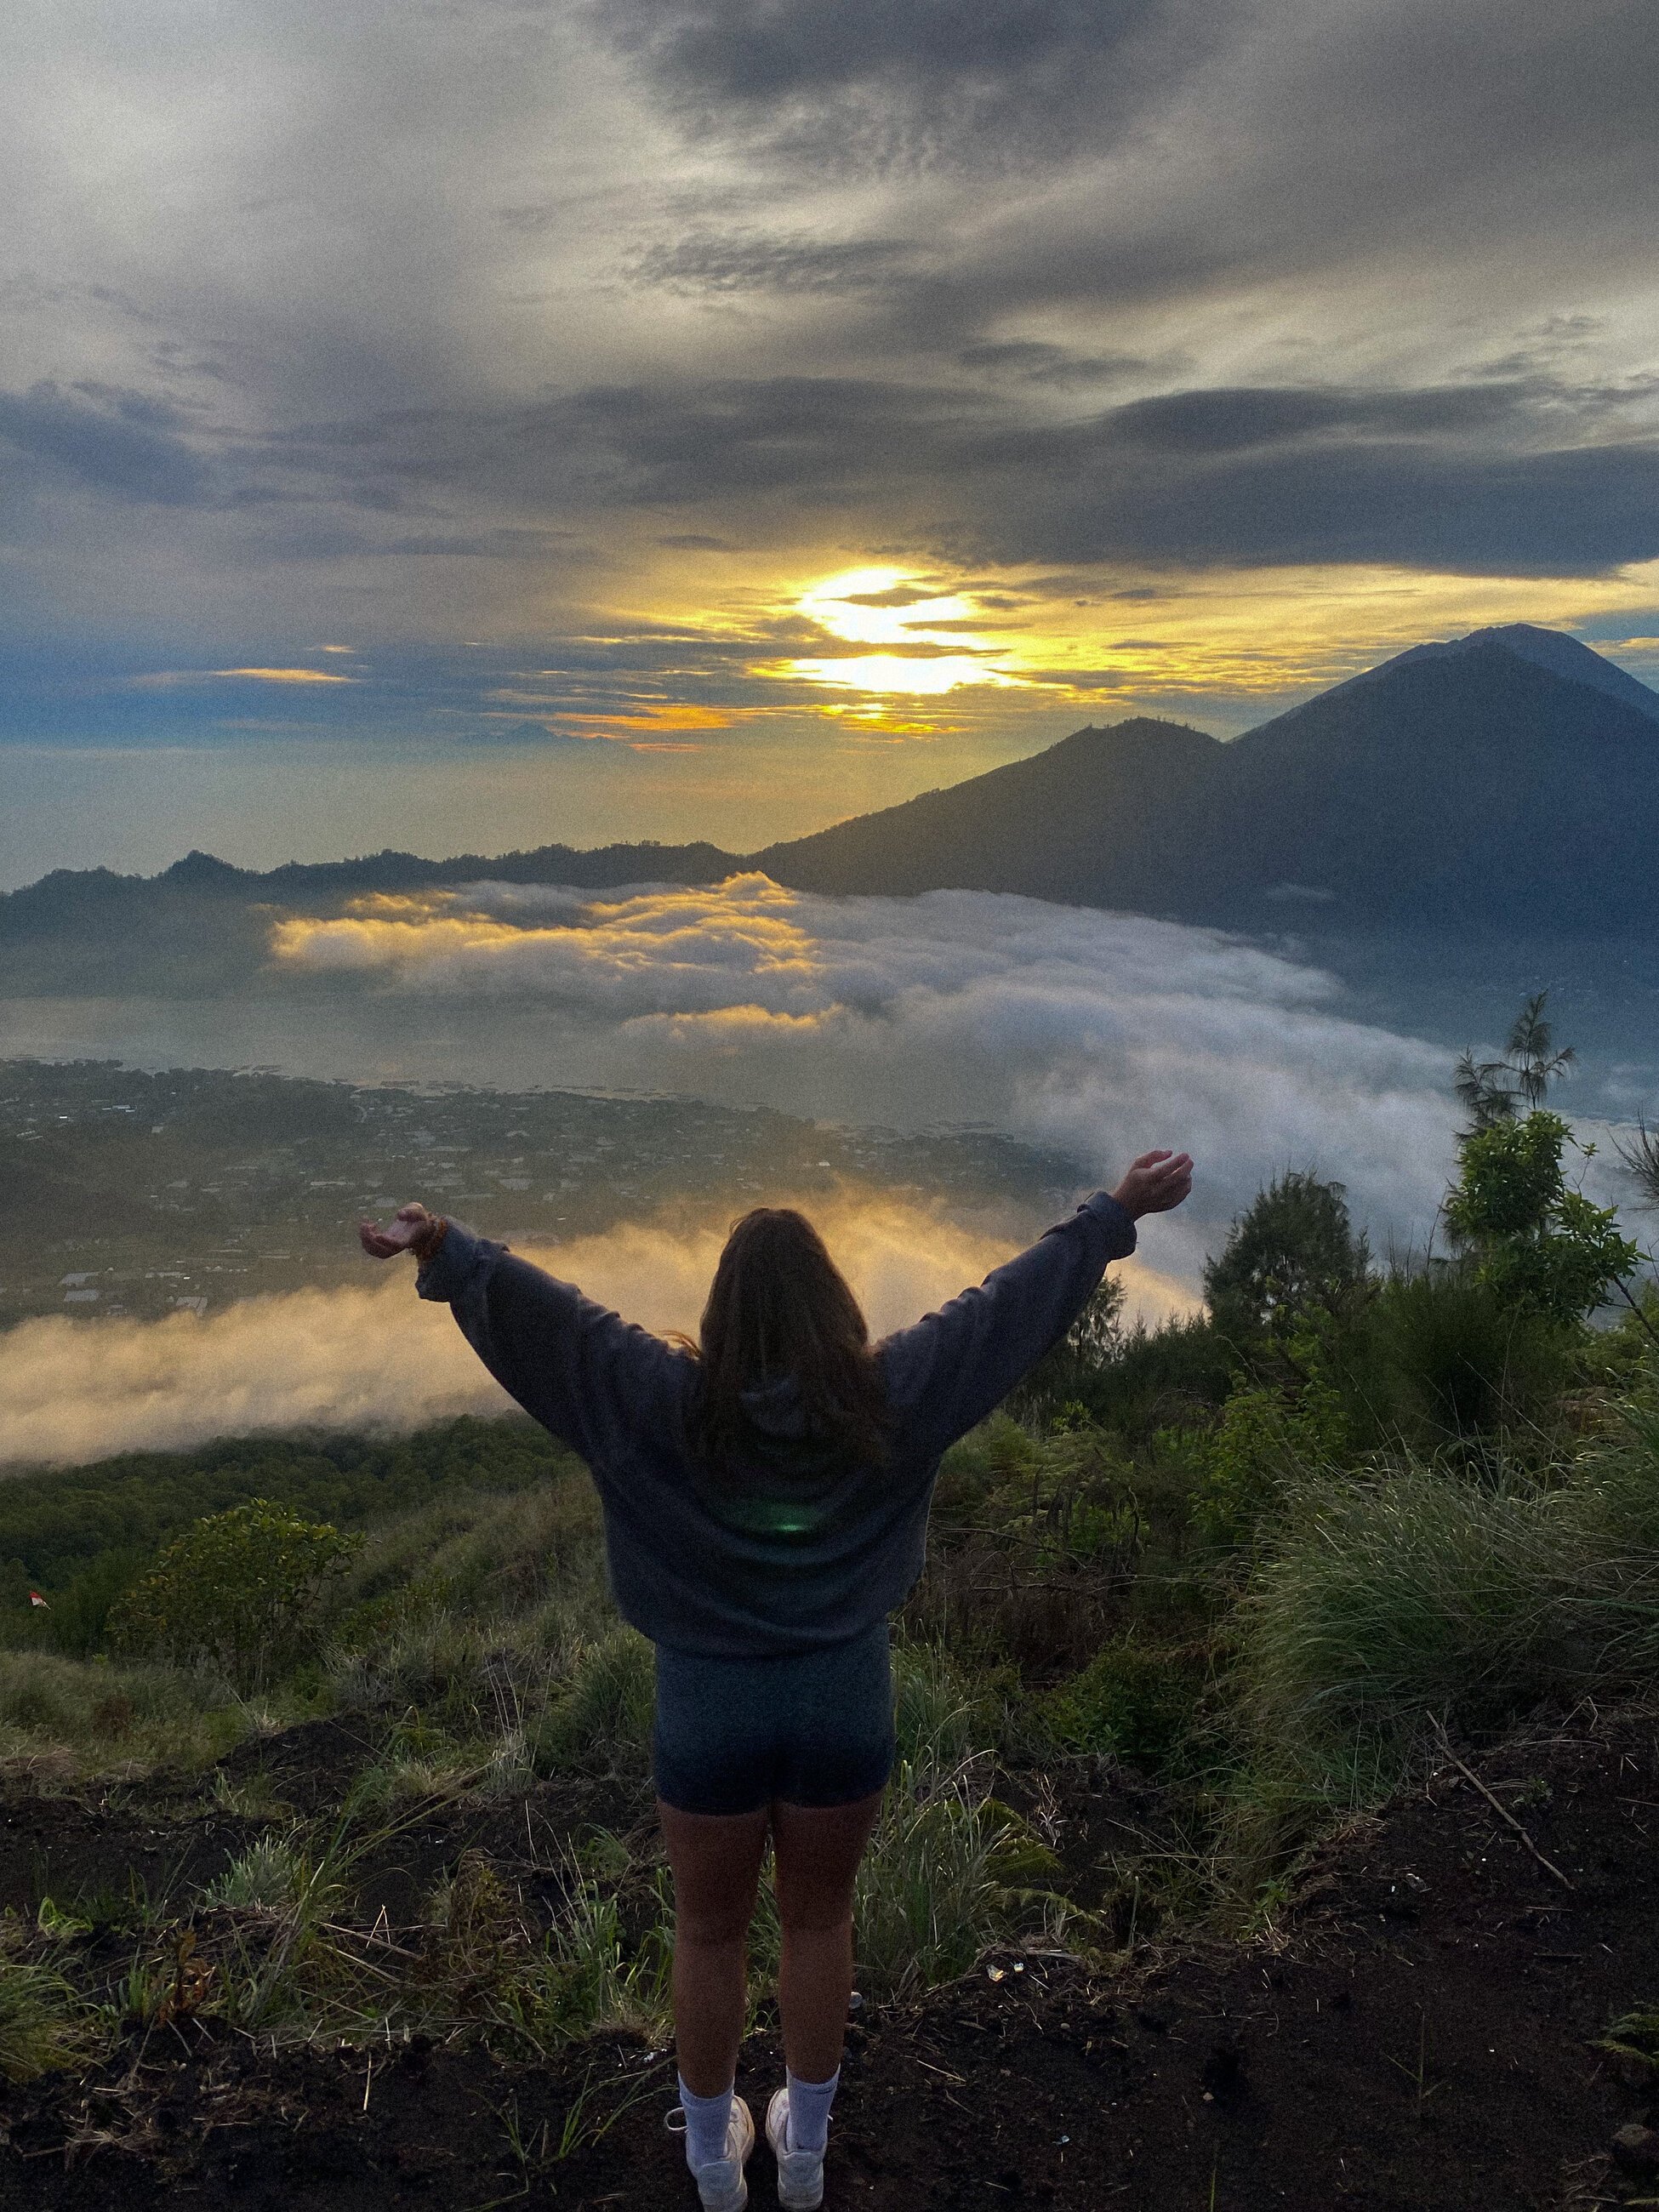 Sunrise at Mount Batur! 